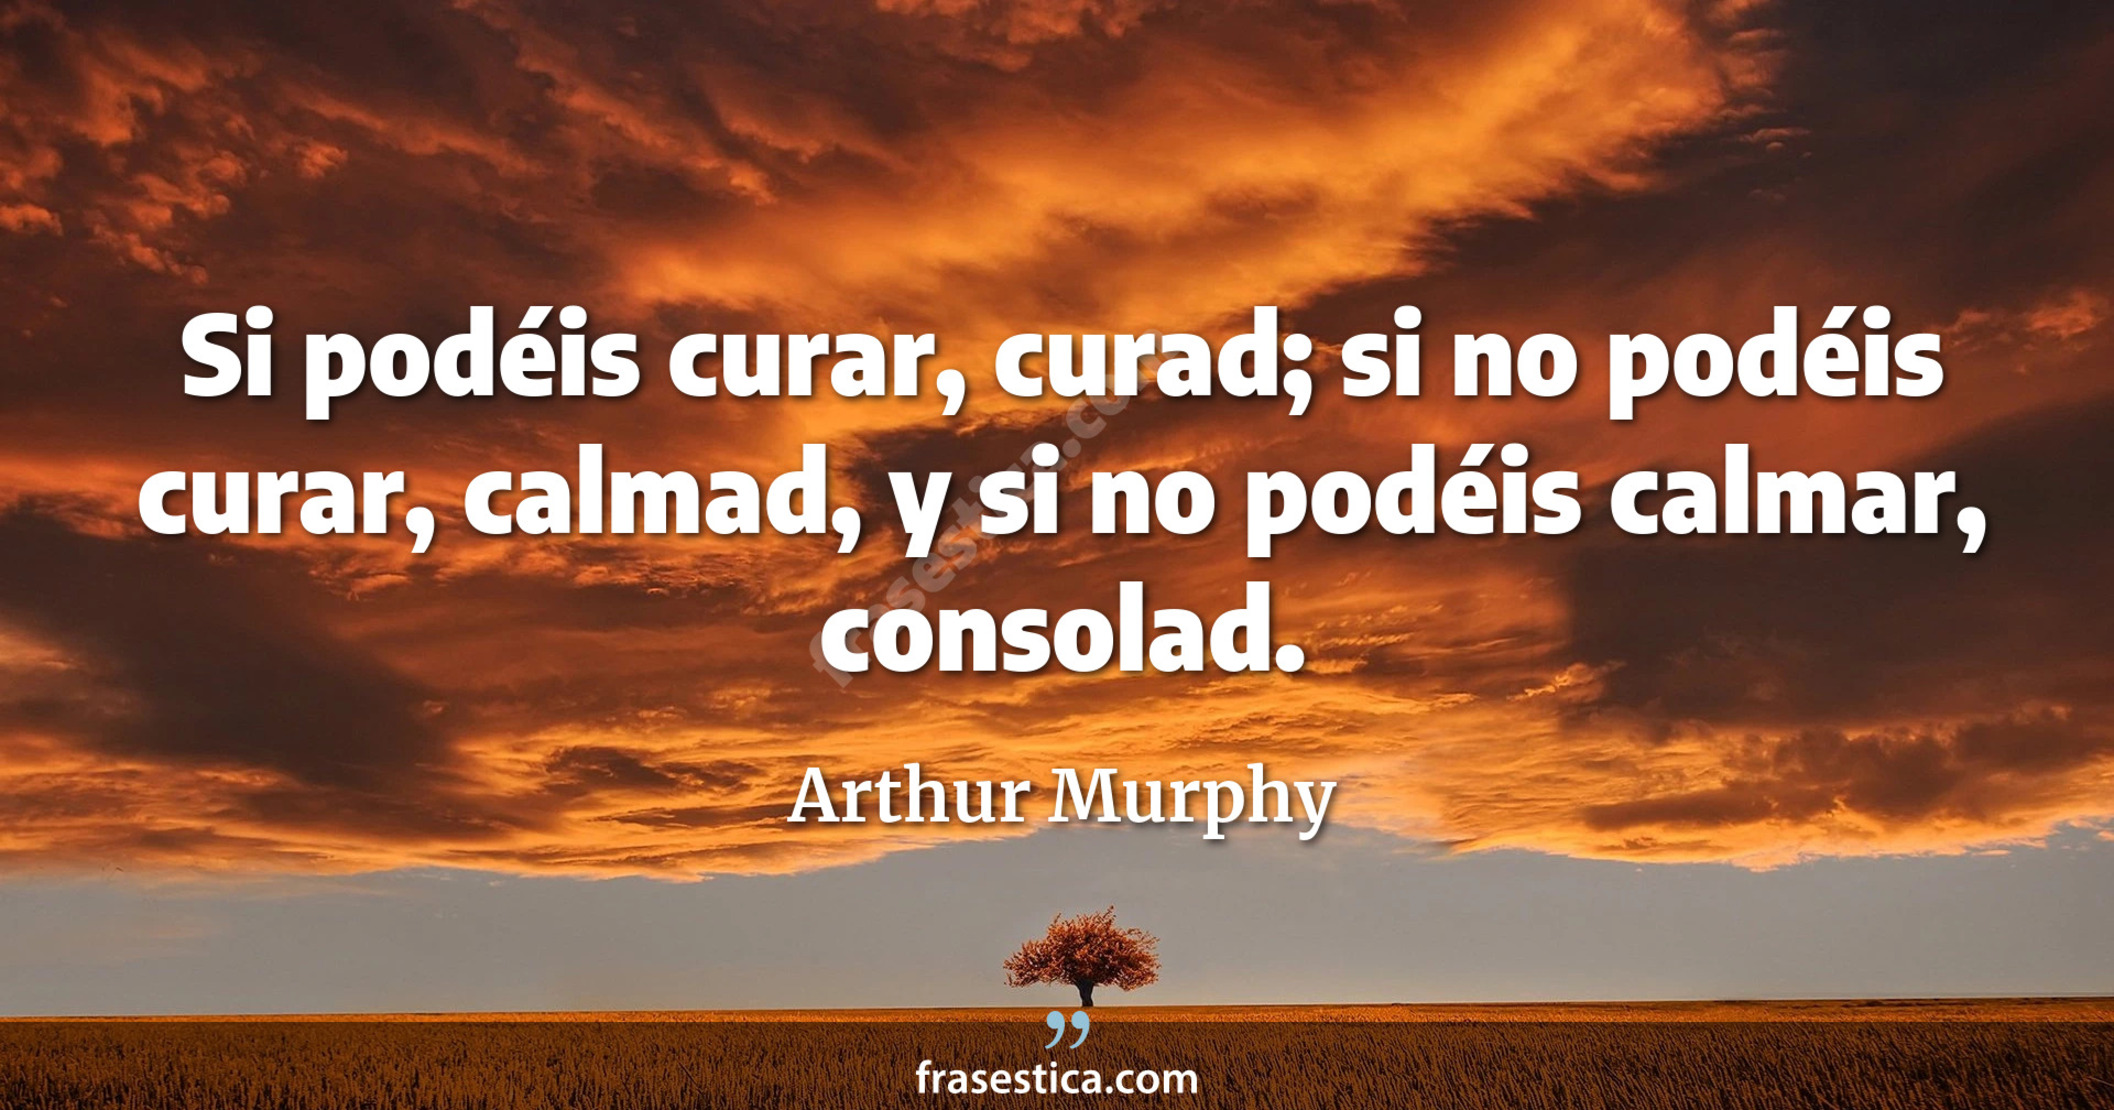 Si podéis curar, curad; si no podéis curar, calmad, y si no podéis calmar, consolad. - Arthur Murphy